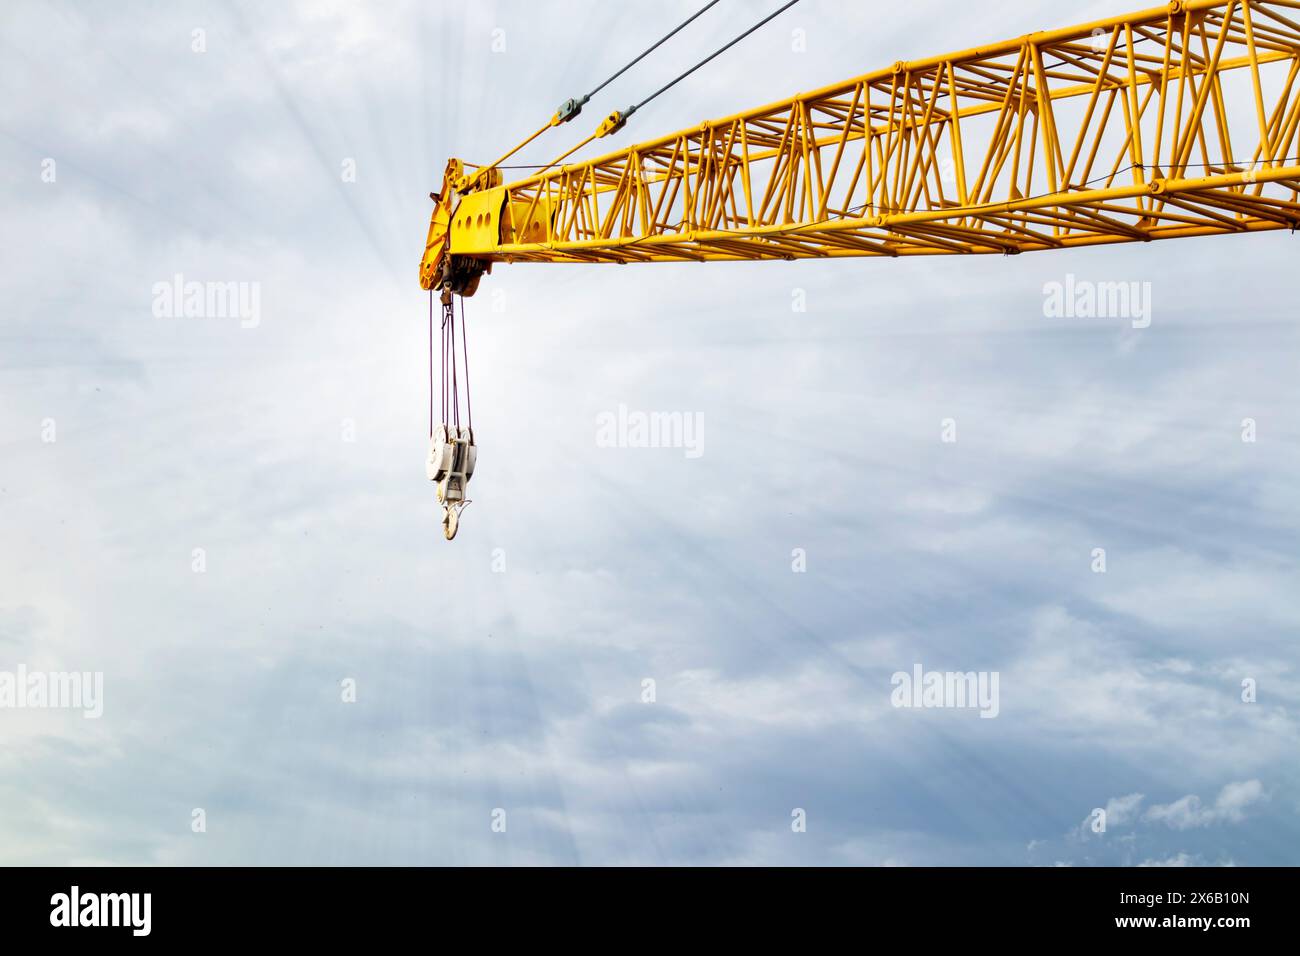 Informationen zum Anheben des Krans auf der Baustelle und zum blauen Himmel durch Betonung der Details des Auslegerkrans und der Schlinge Stockfoto